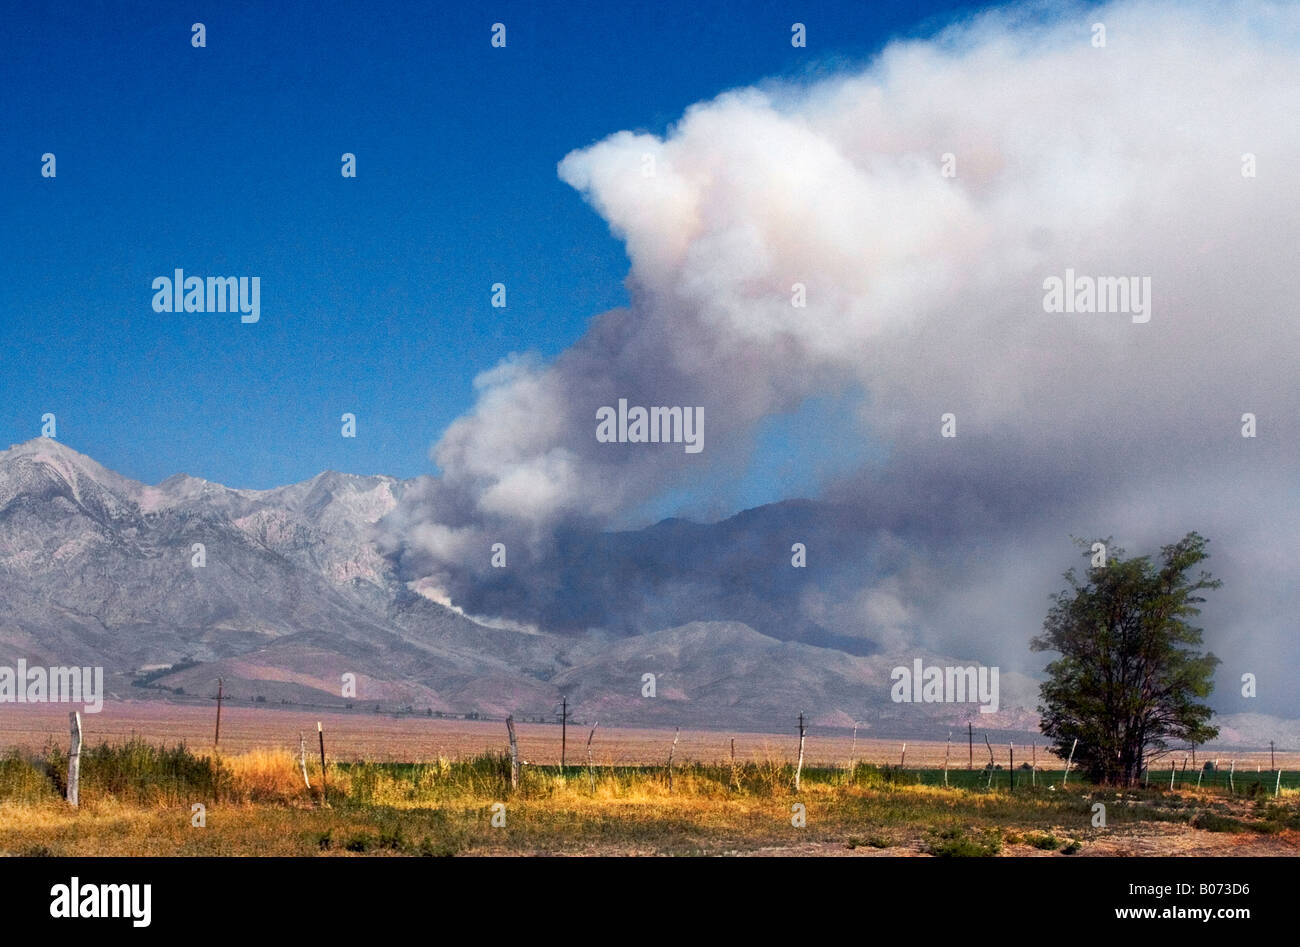 Un énorme incendie de forêt sur le côté est de la Sierra Nevada Mts. Juillet 2007 Banque D'Images